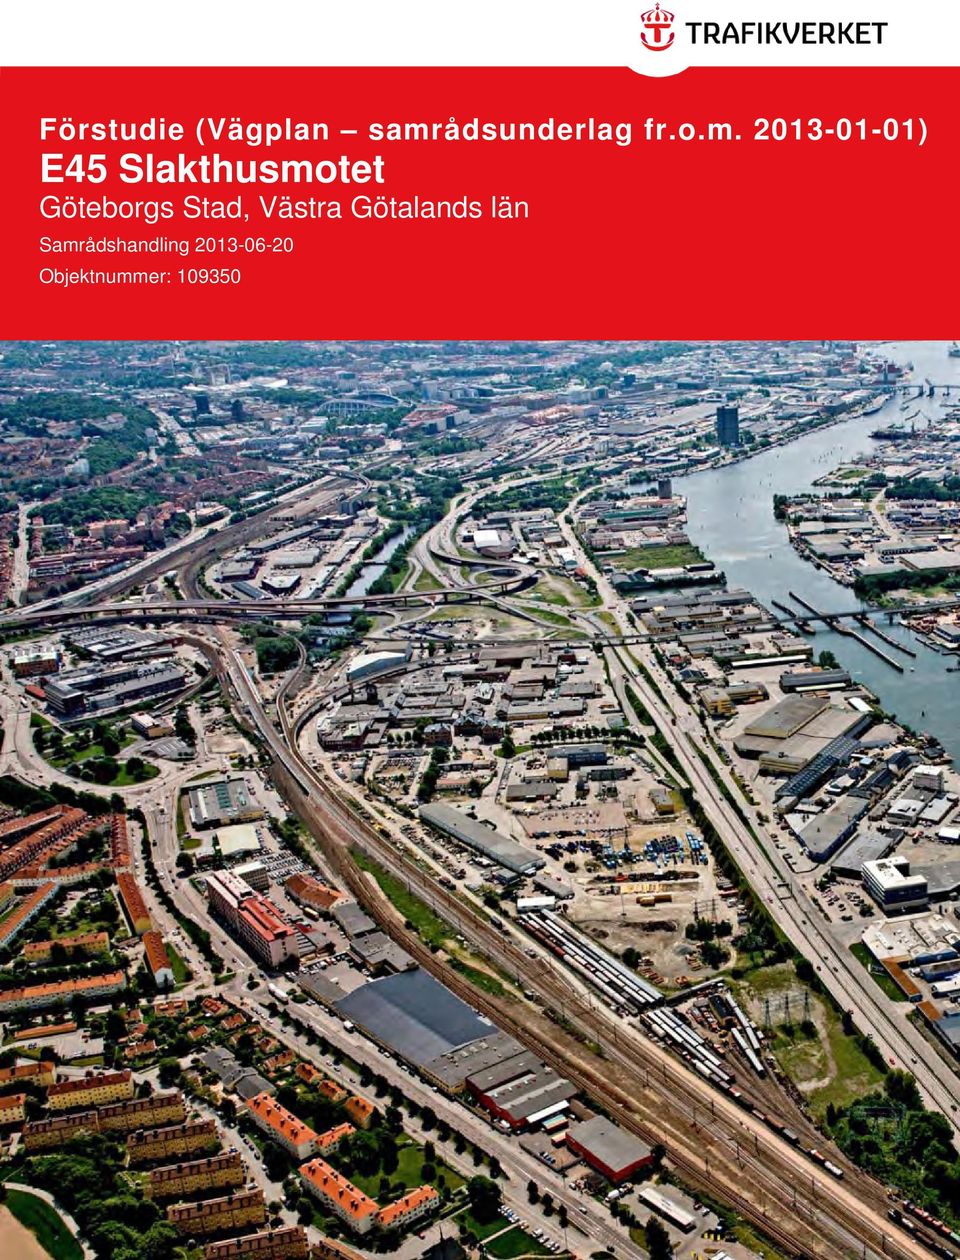 2013-01-01) E45 Slakthusmotet Göteborgs